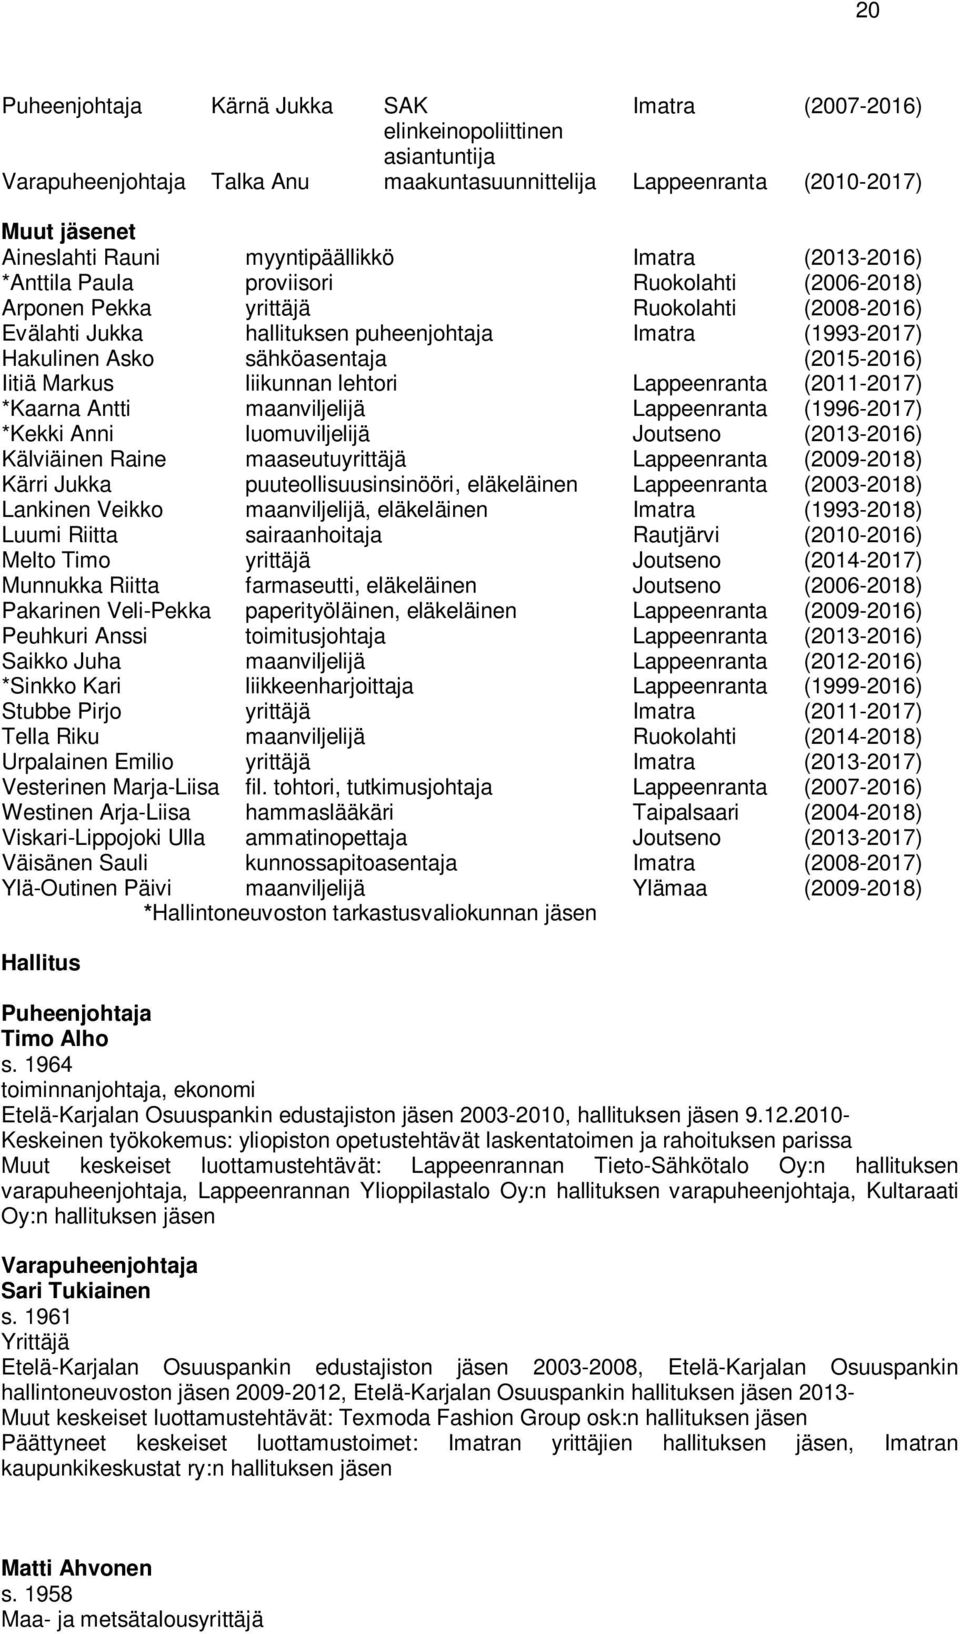 Asko sähköasentaja (2015-2016) Iitiä Markus liikunnan lehtori Lappeenranta (2011-2017) *Kaarna Antti maanviljelijä Lappeenranta (1996-2017) *Kekki Anni luomuviljelijä Joutseno (2013-2016) Kälviäinen